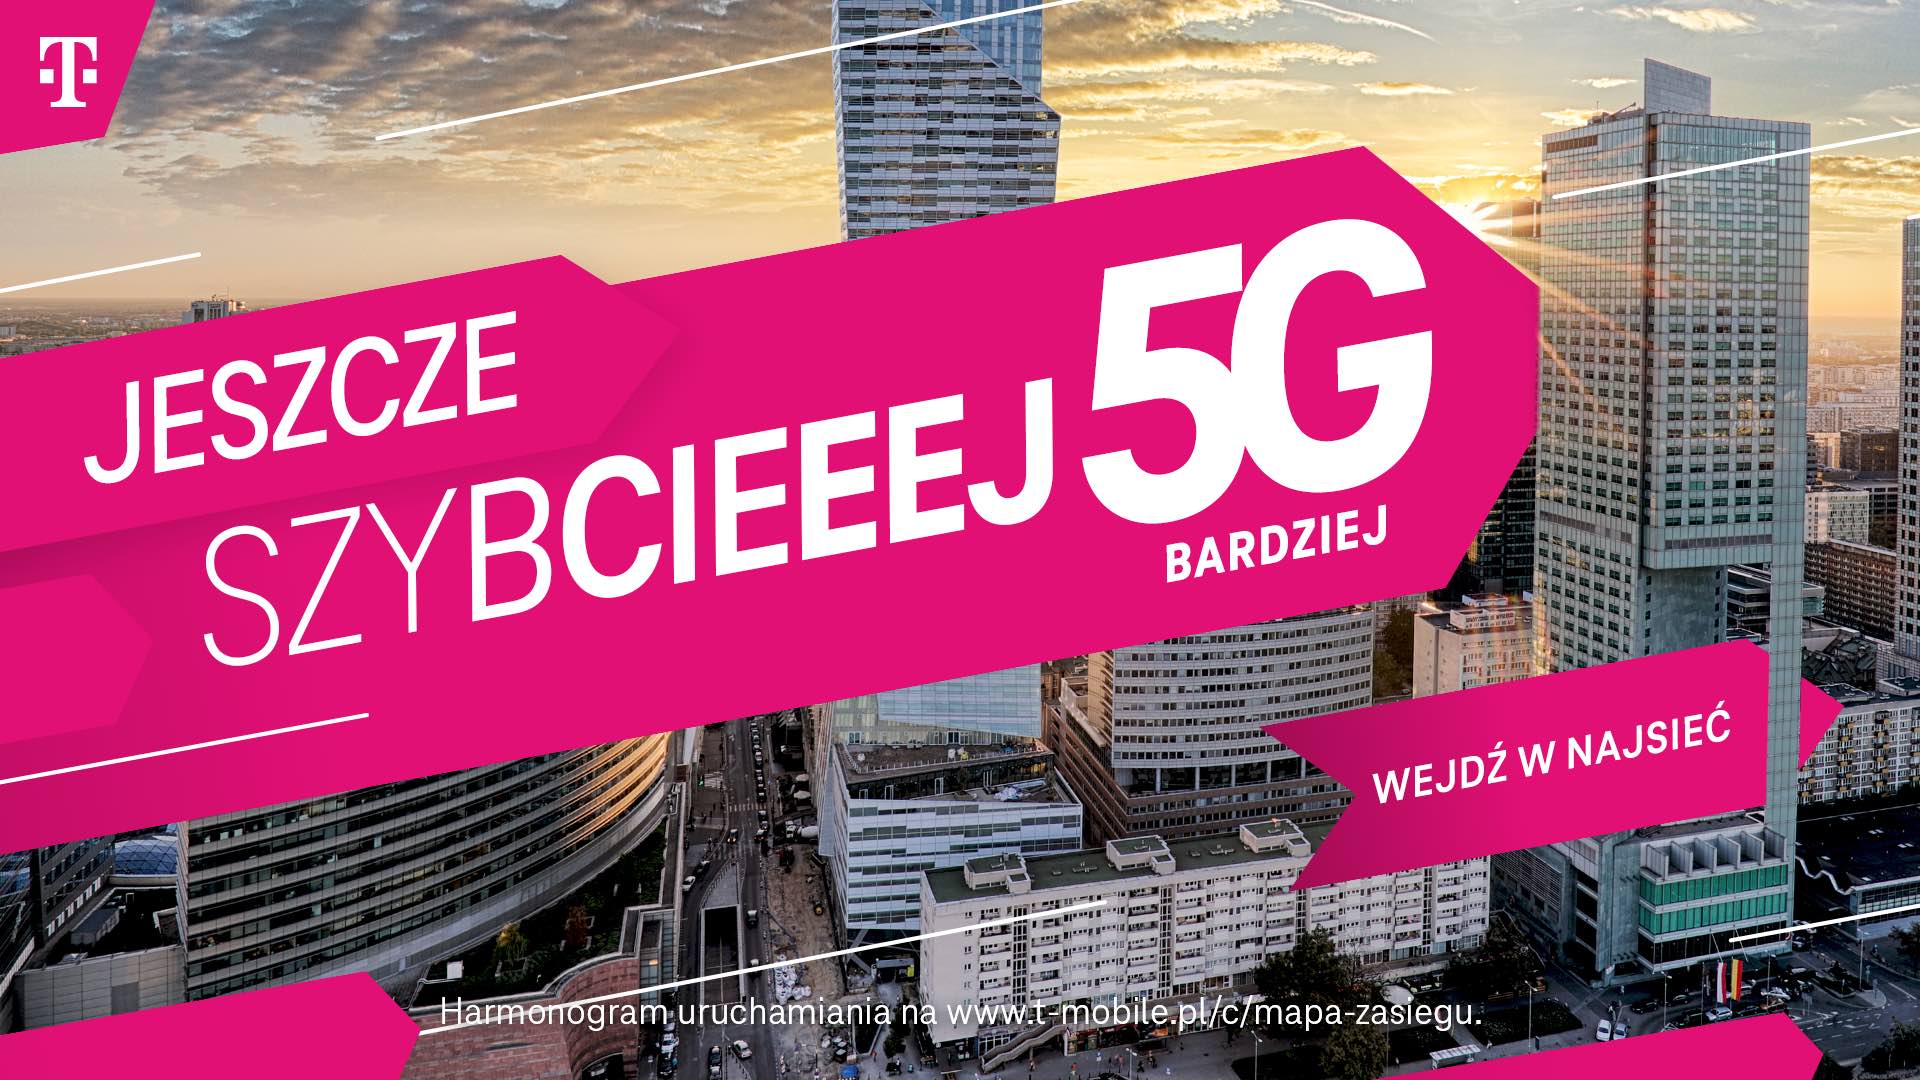 5G Bardziej od T-Mobile już dostępna dla niemal 26 proc. populacji Polski